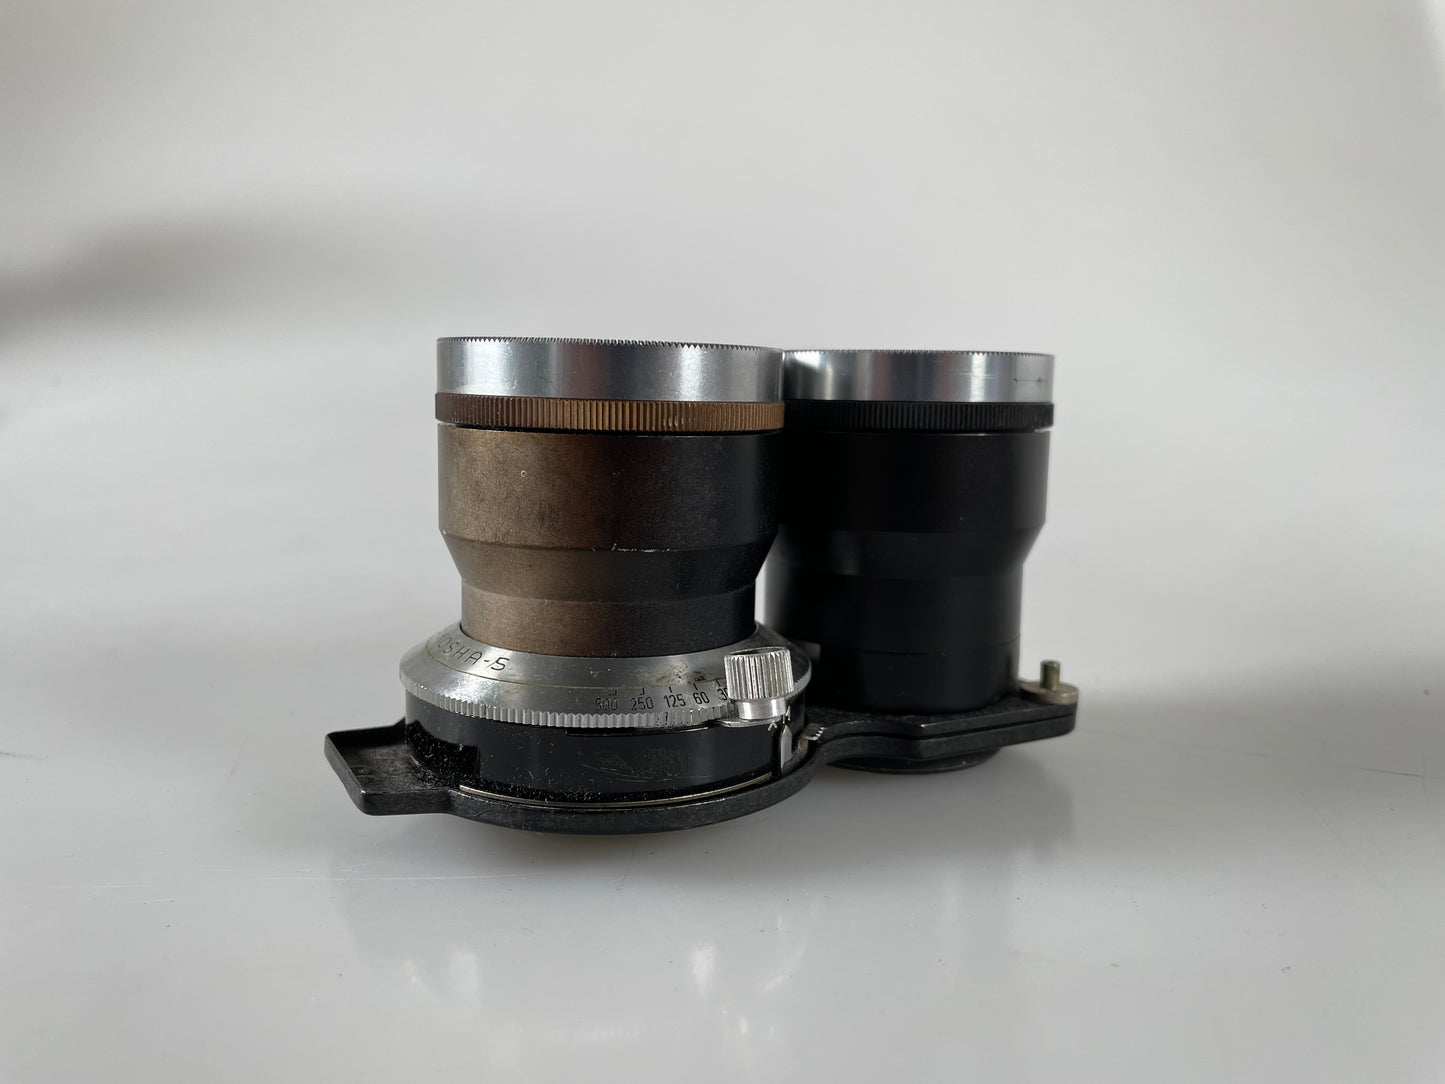 Mamiya TLR 13.5cm (135mm) f4.5 Sekor Lens for C330 C220 C33 C22 C3